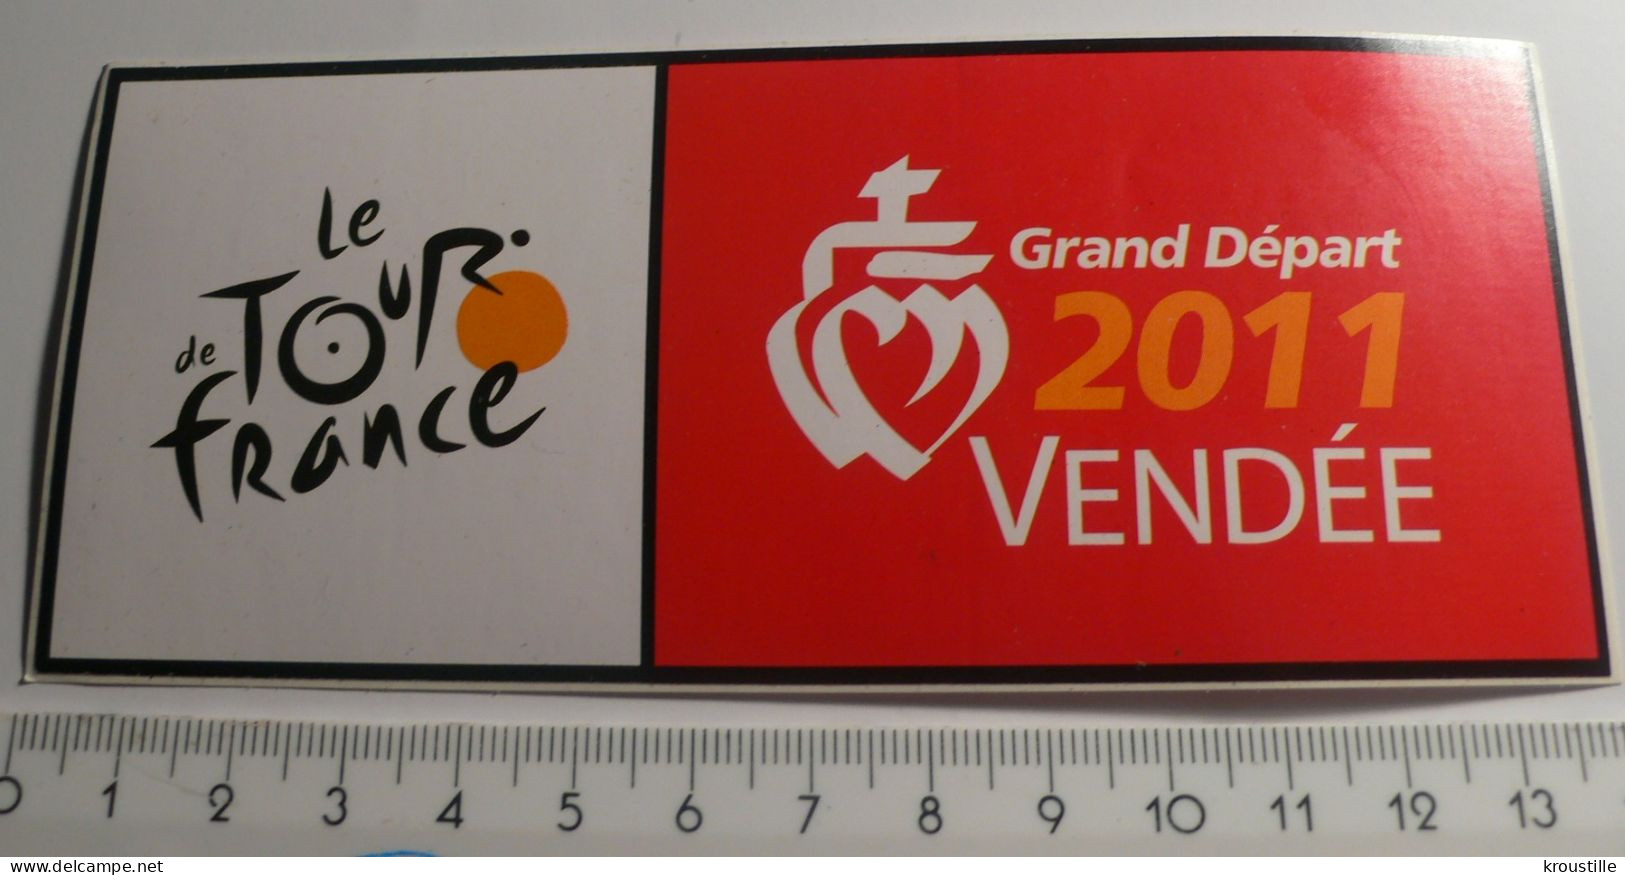 CYCLISME : AUTOOCLLANT LE TOUR DE FRANCE - GRAND DEPART 2011 VENDEE - Stickers